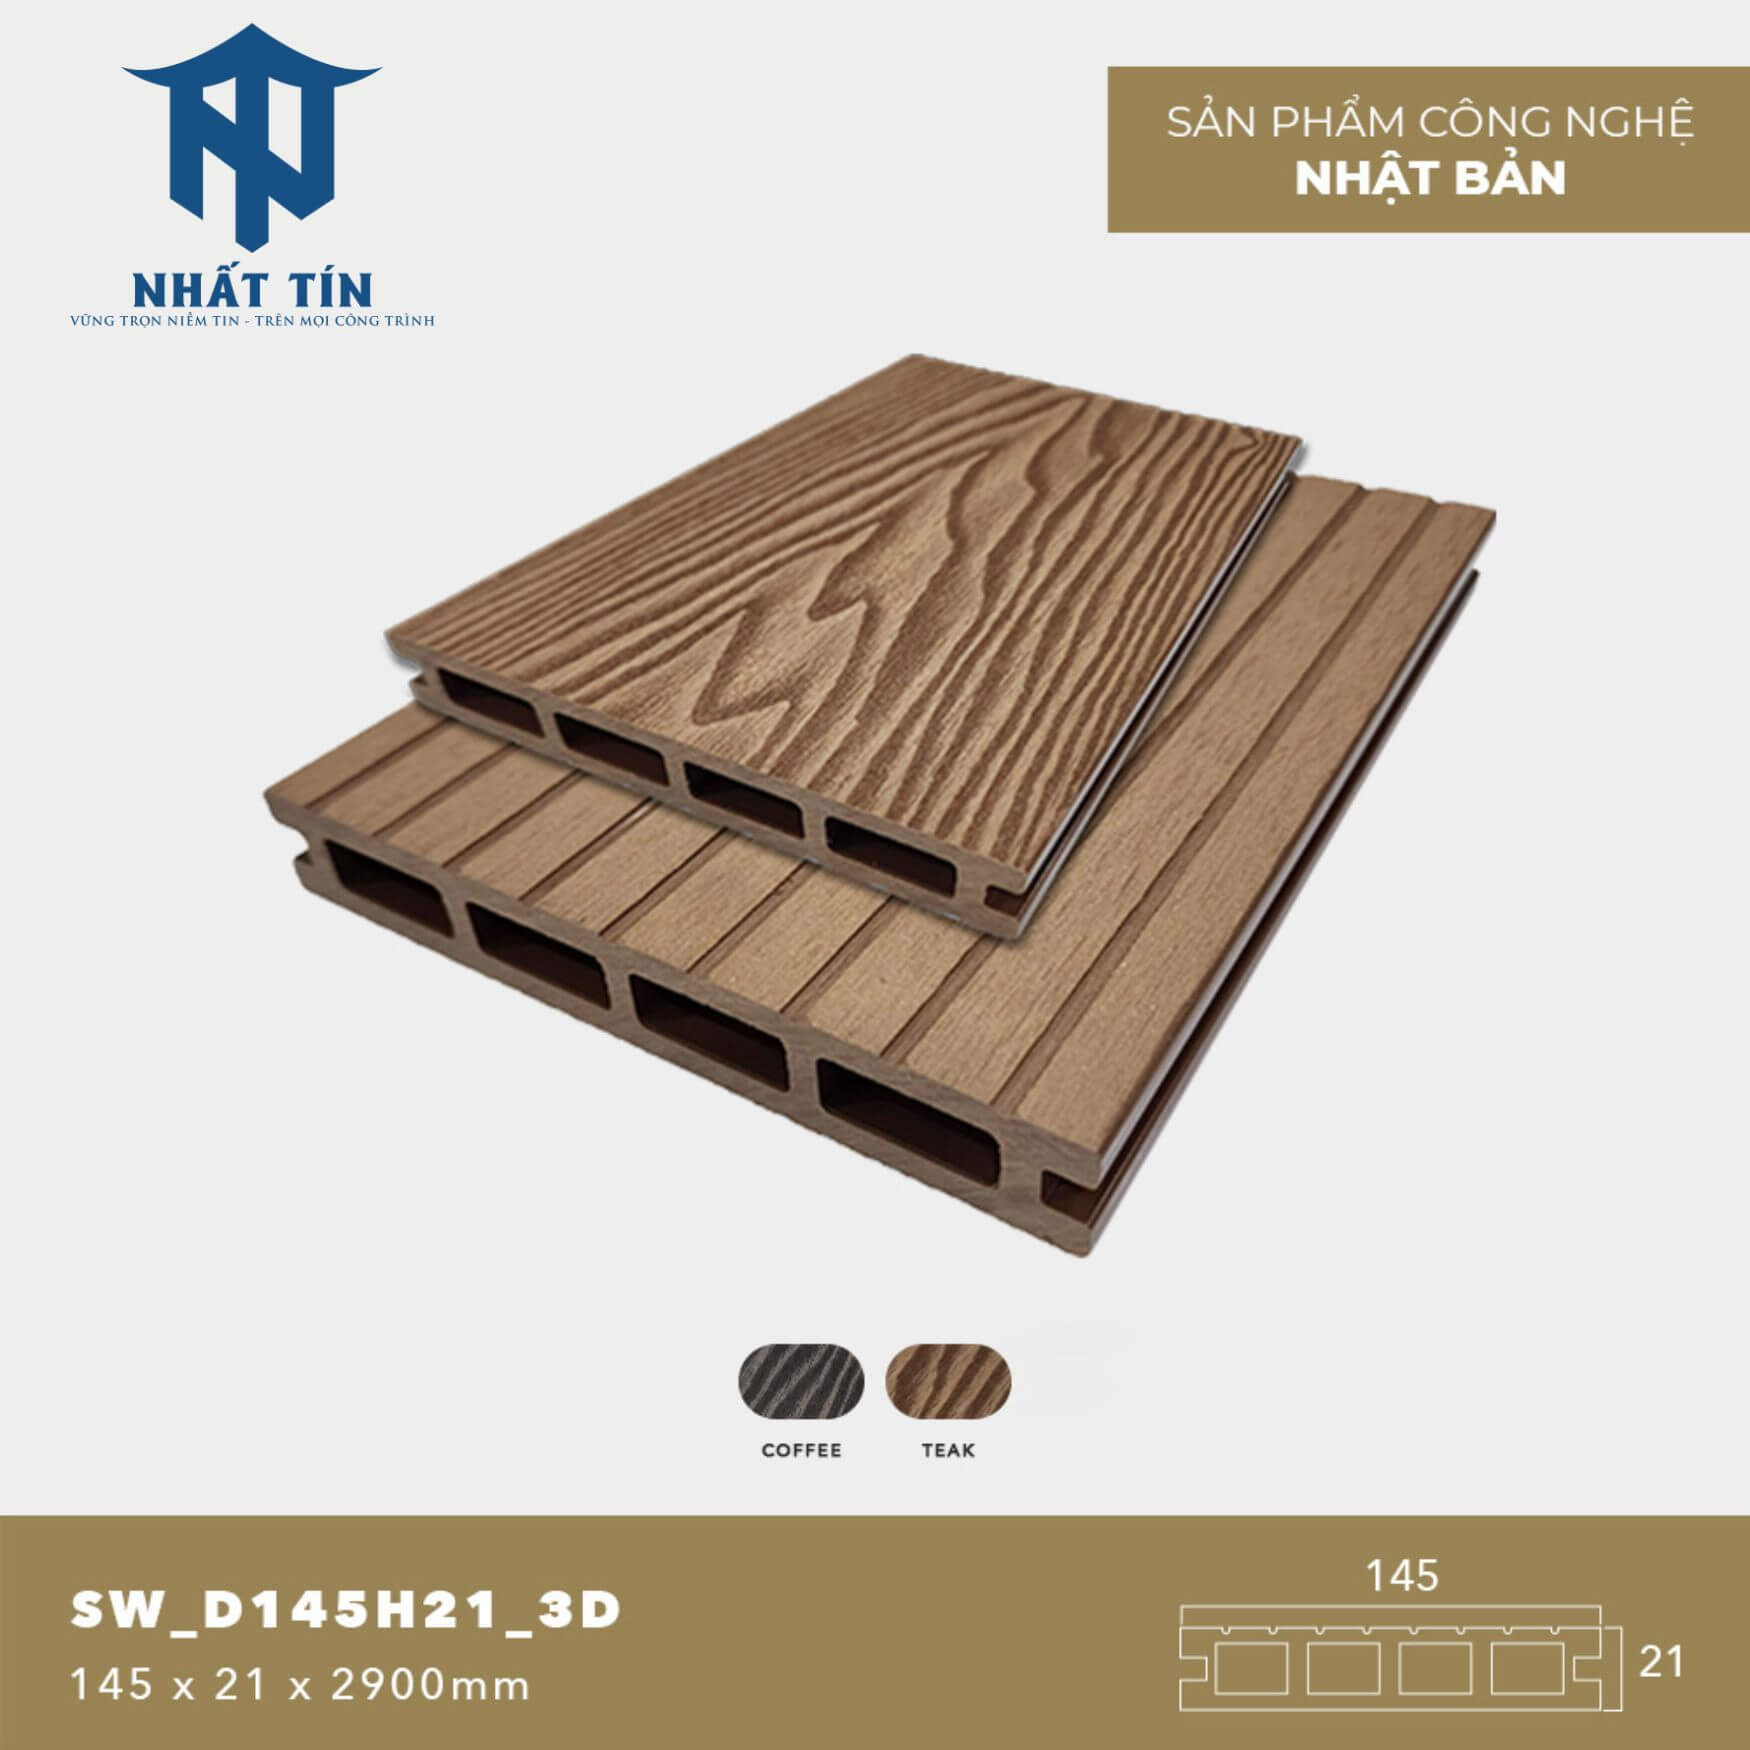 Sàn gỗ nhựa ngoài trời SW_D145H21_3D